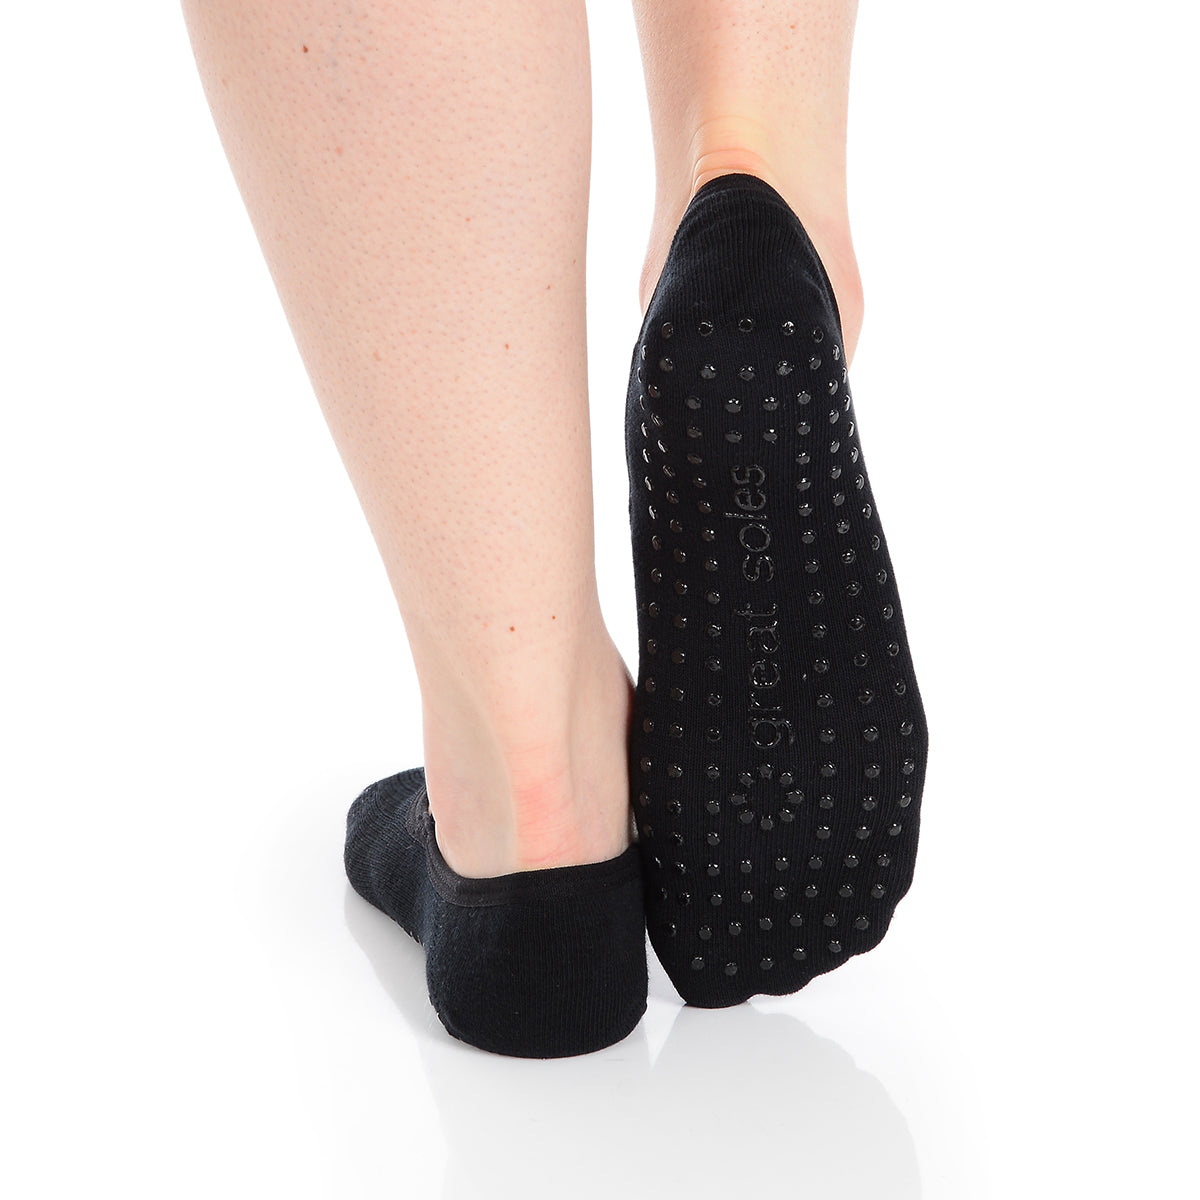 Buy Non Slip Socks for Women - Grip Socks for Barre, Pilates, Yoga